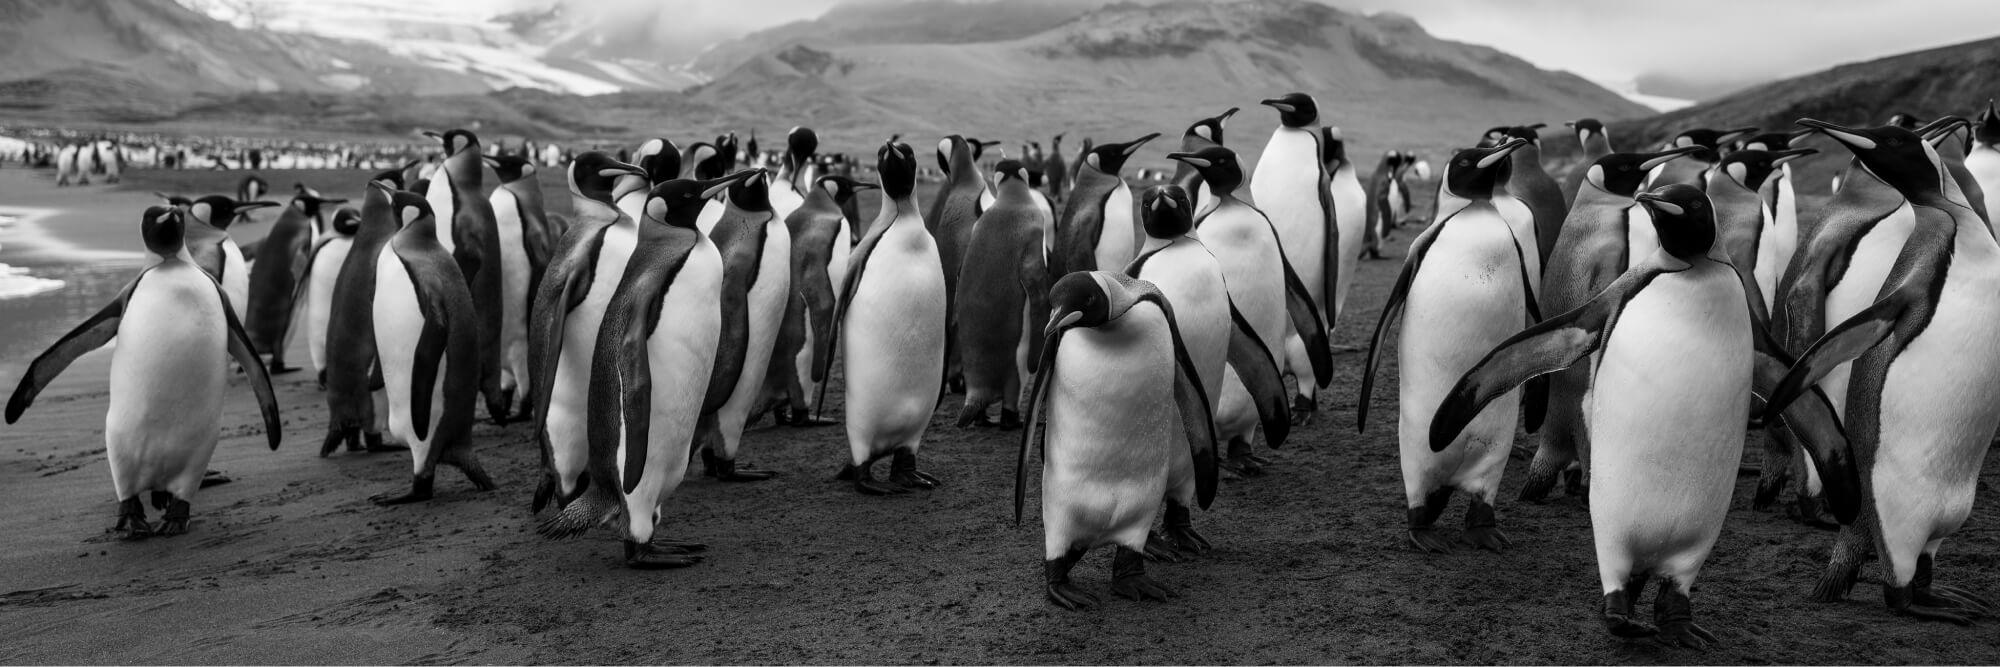 يبدو أن البطاريق الملكية تعرف أنها من يحكم أرض الجليد. المصور: أرتيم شيستاكوف. المكان: القطب الجنوبي.